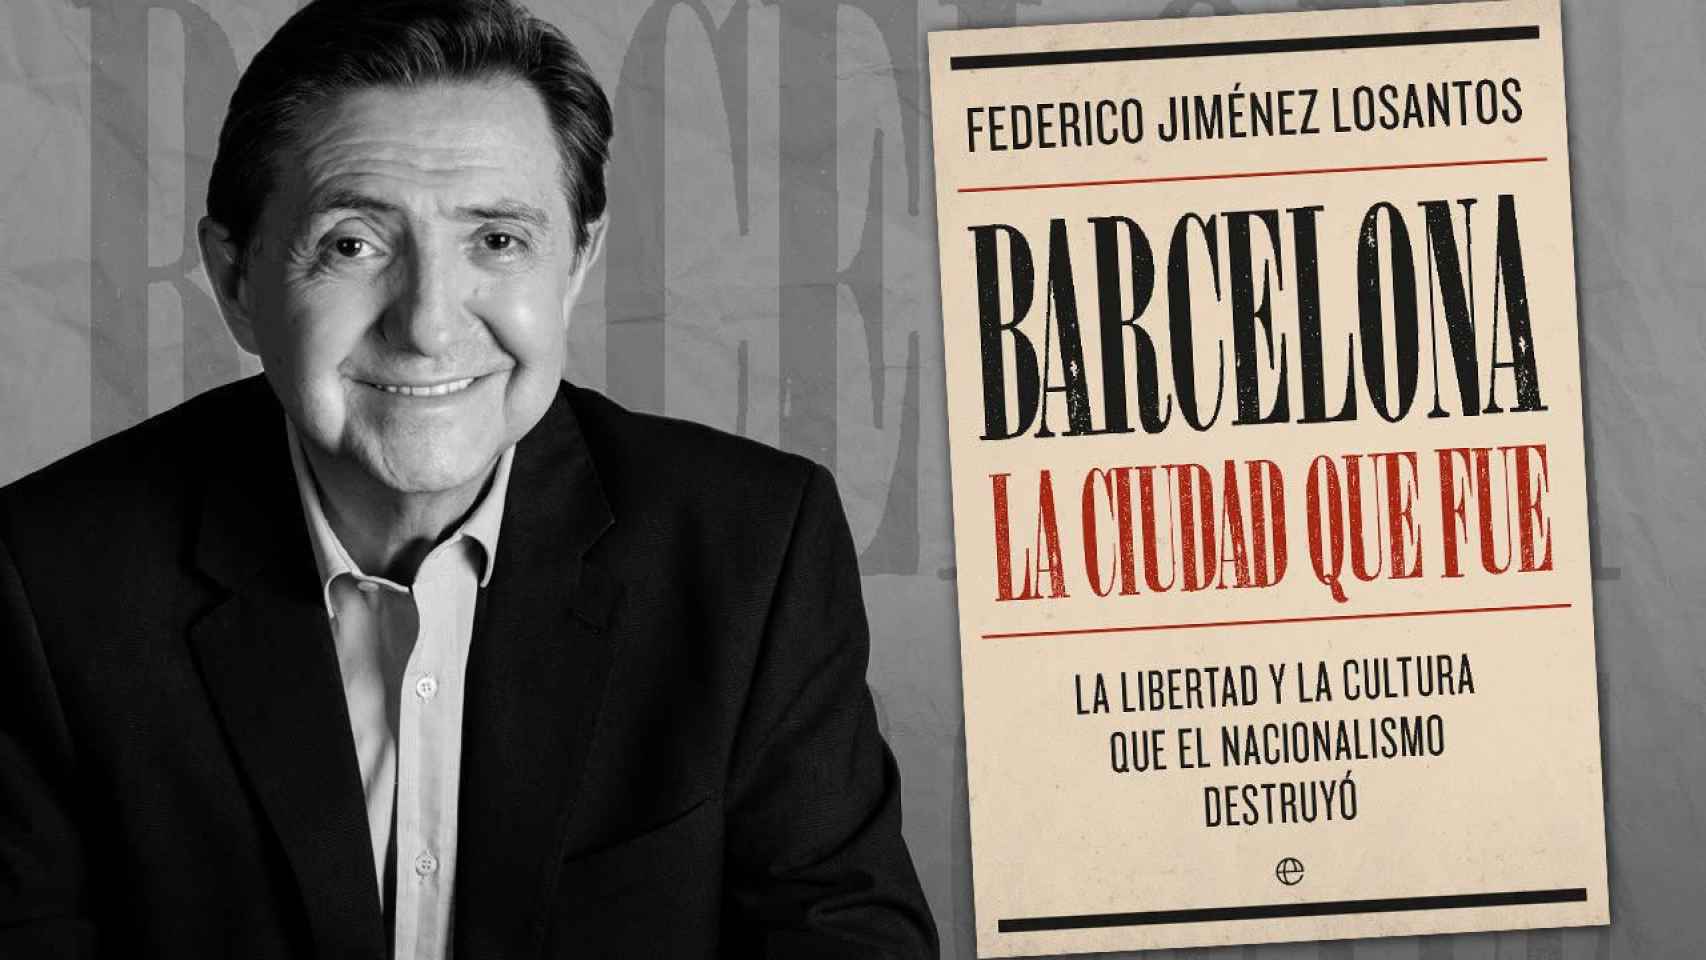 Federico Jiménez Losantos reedita 'Barcelona. La ciudad que fue', un alegato contra el nacionalismo